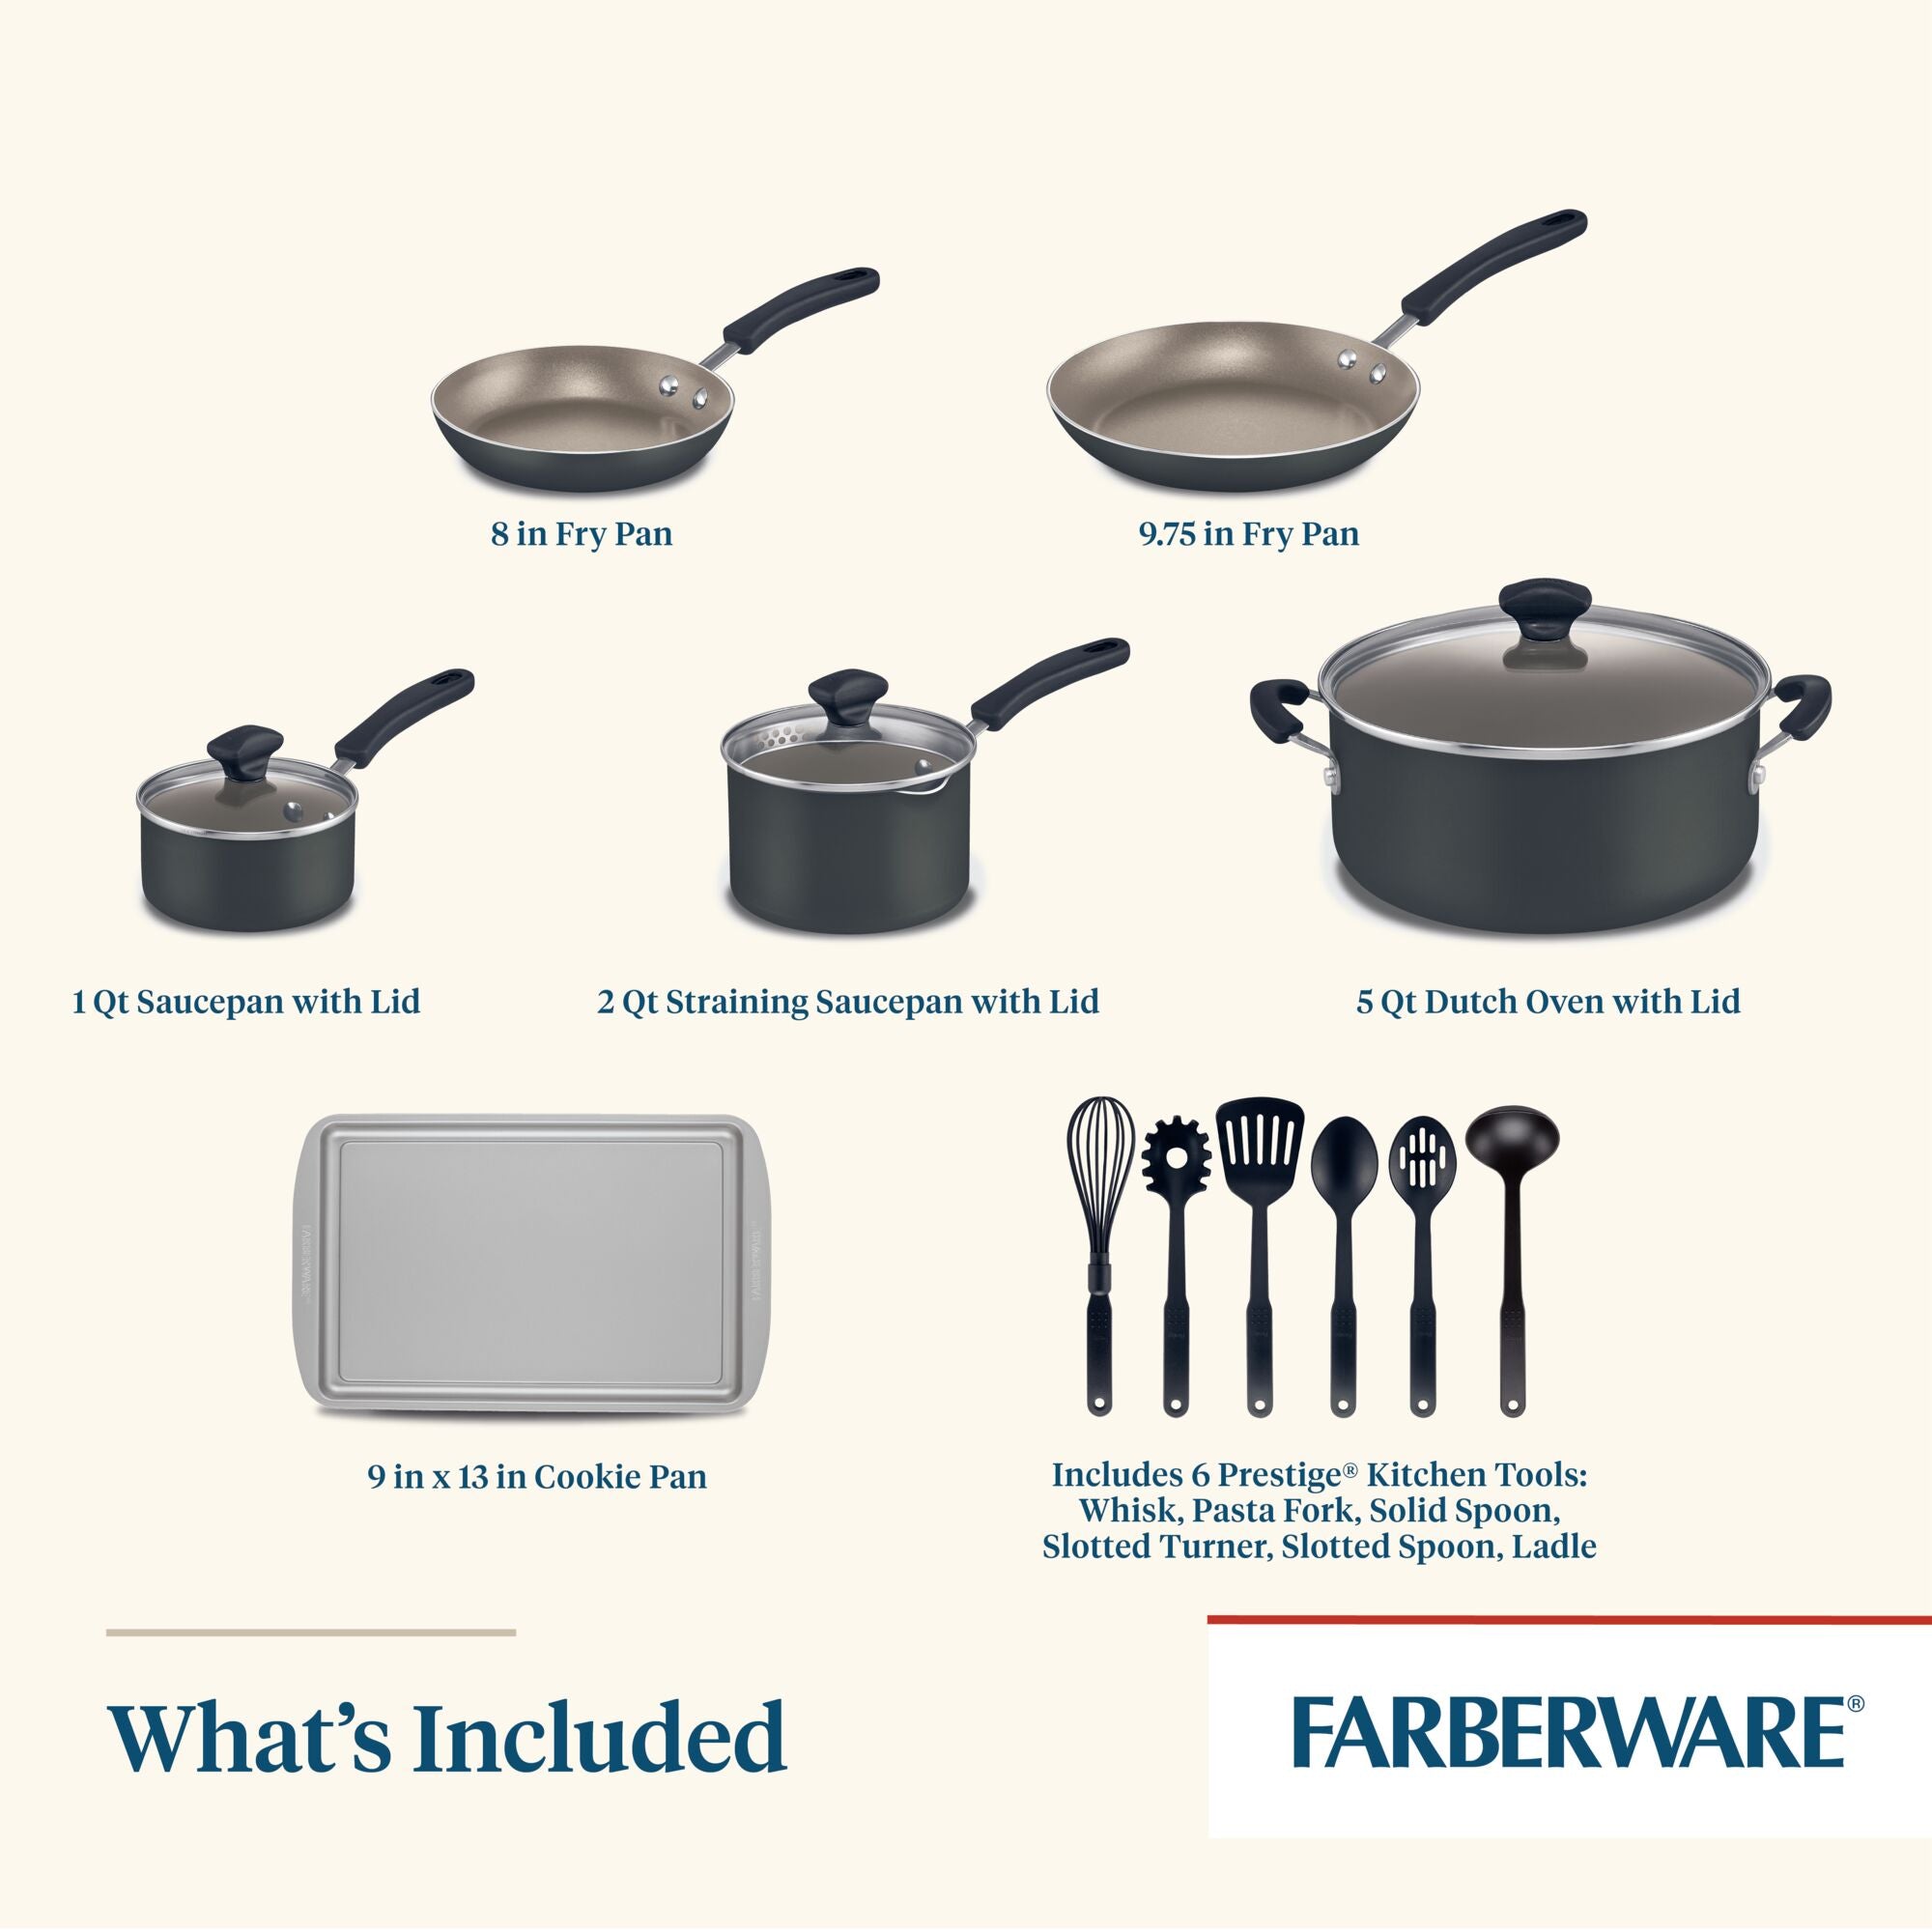 Farberware Aluminum 15-Piece Nonstick Cookware Set, Black